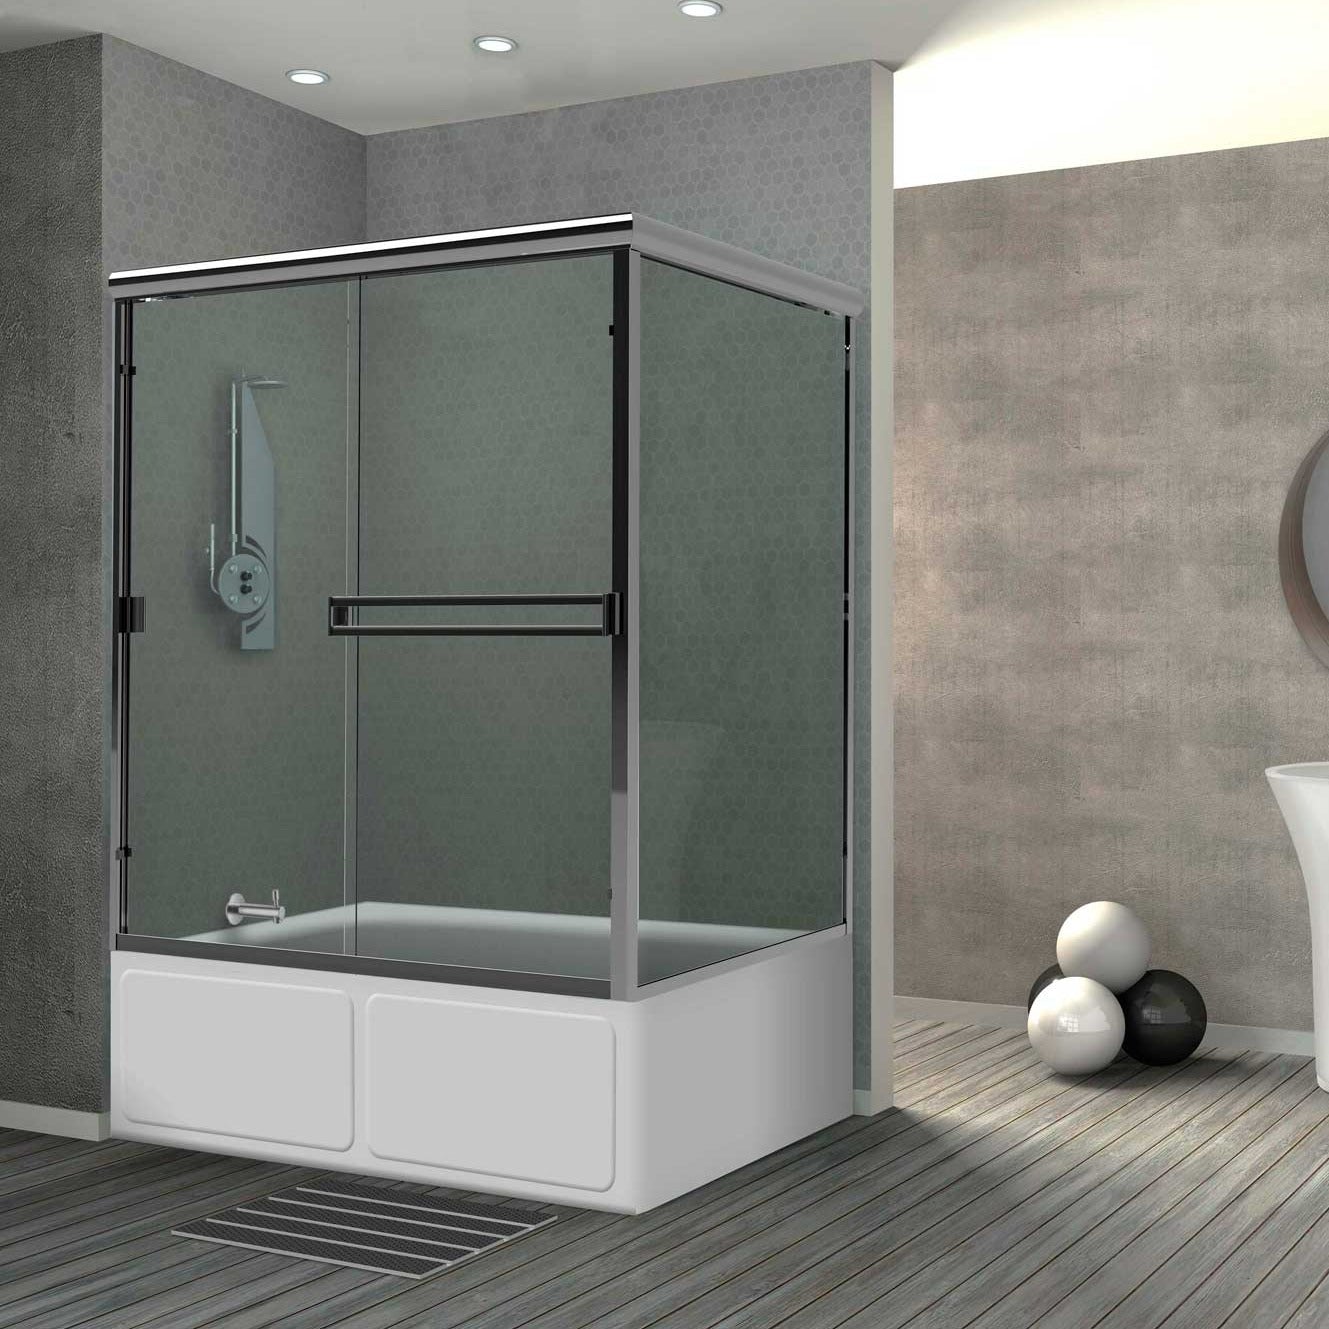 Holcam semi-frameless sliding glass shower door - cte90